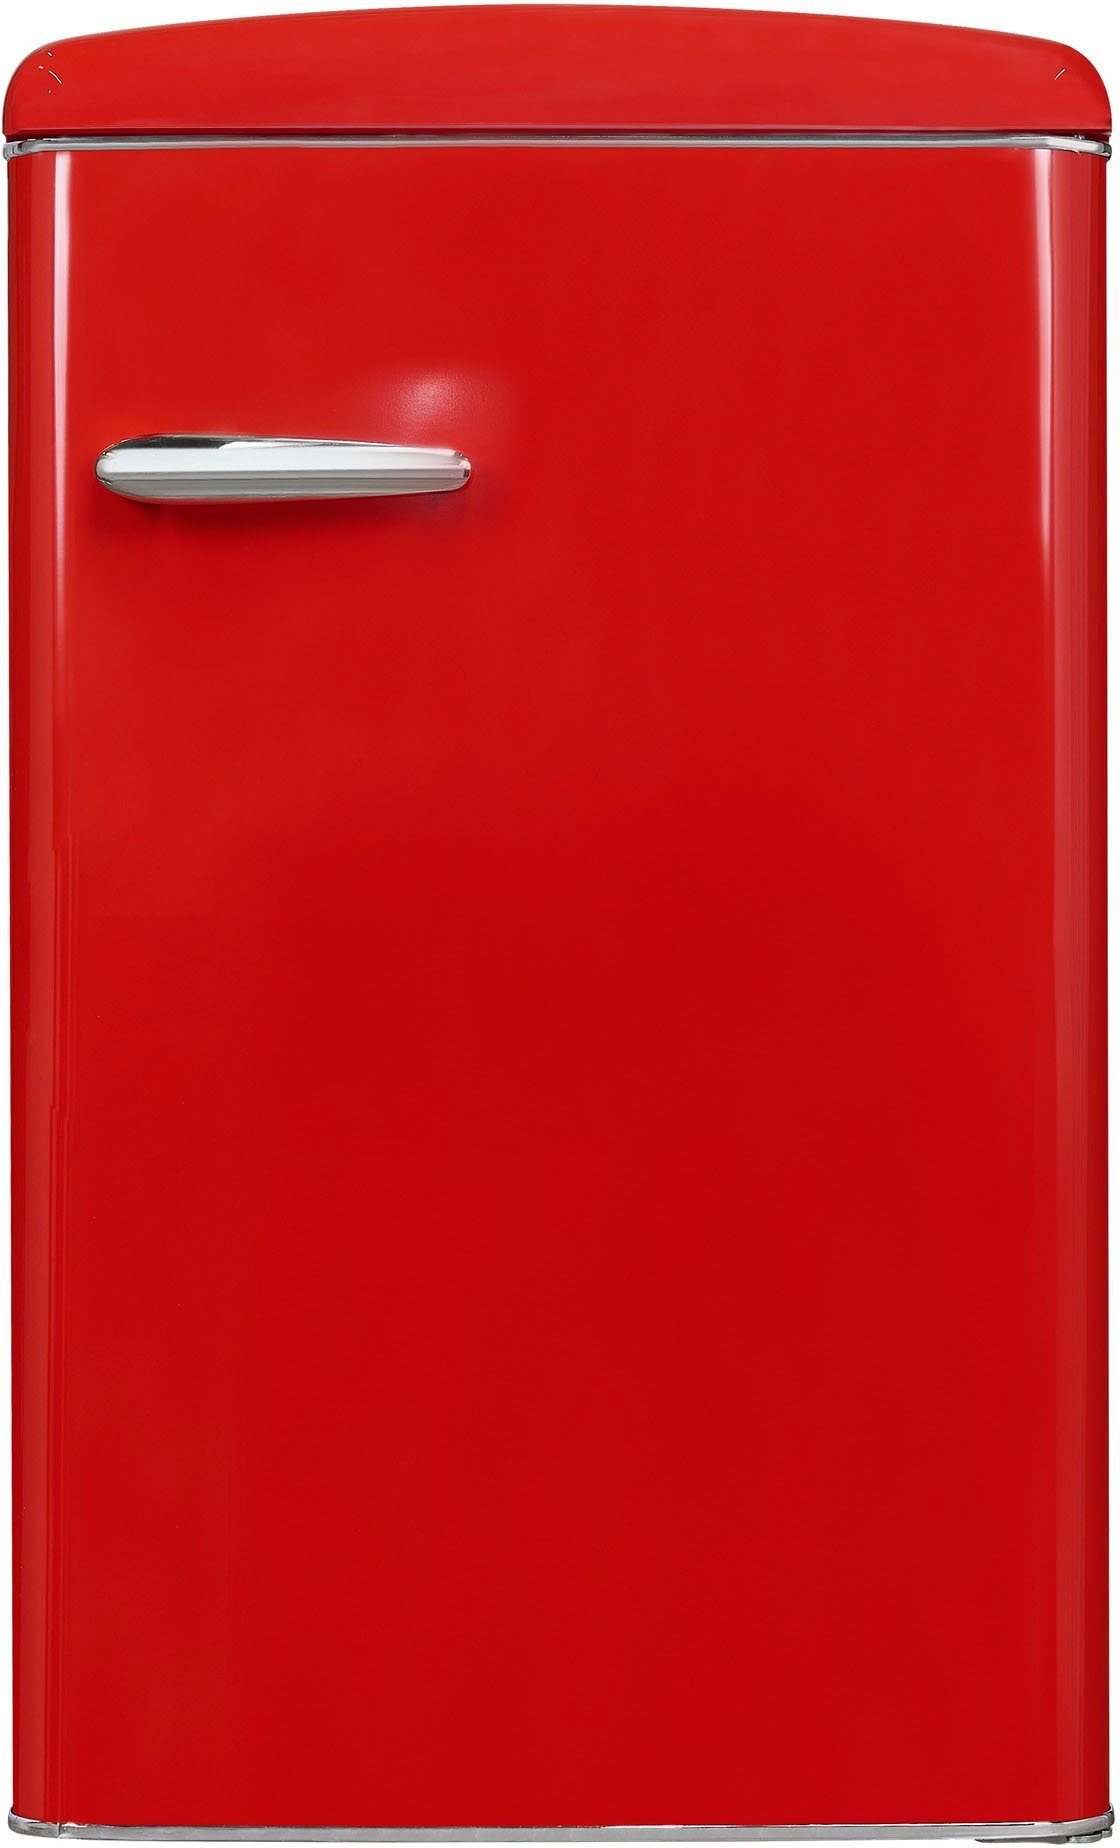 89,5 RKS120-V-H-160F rot, cm exquisit 55 hoch, breit cm Kühlschrank